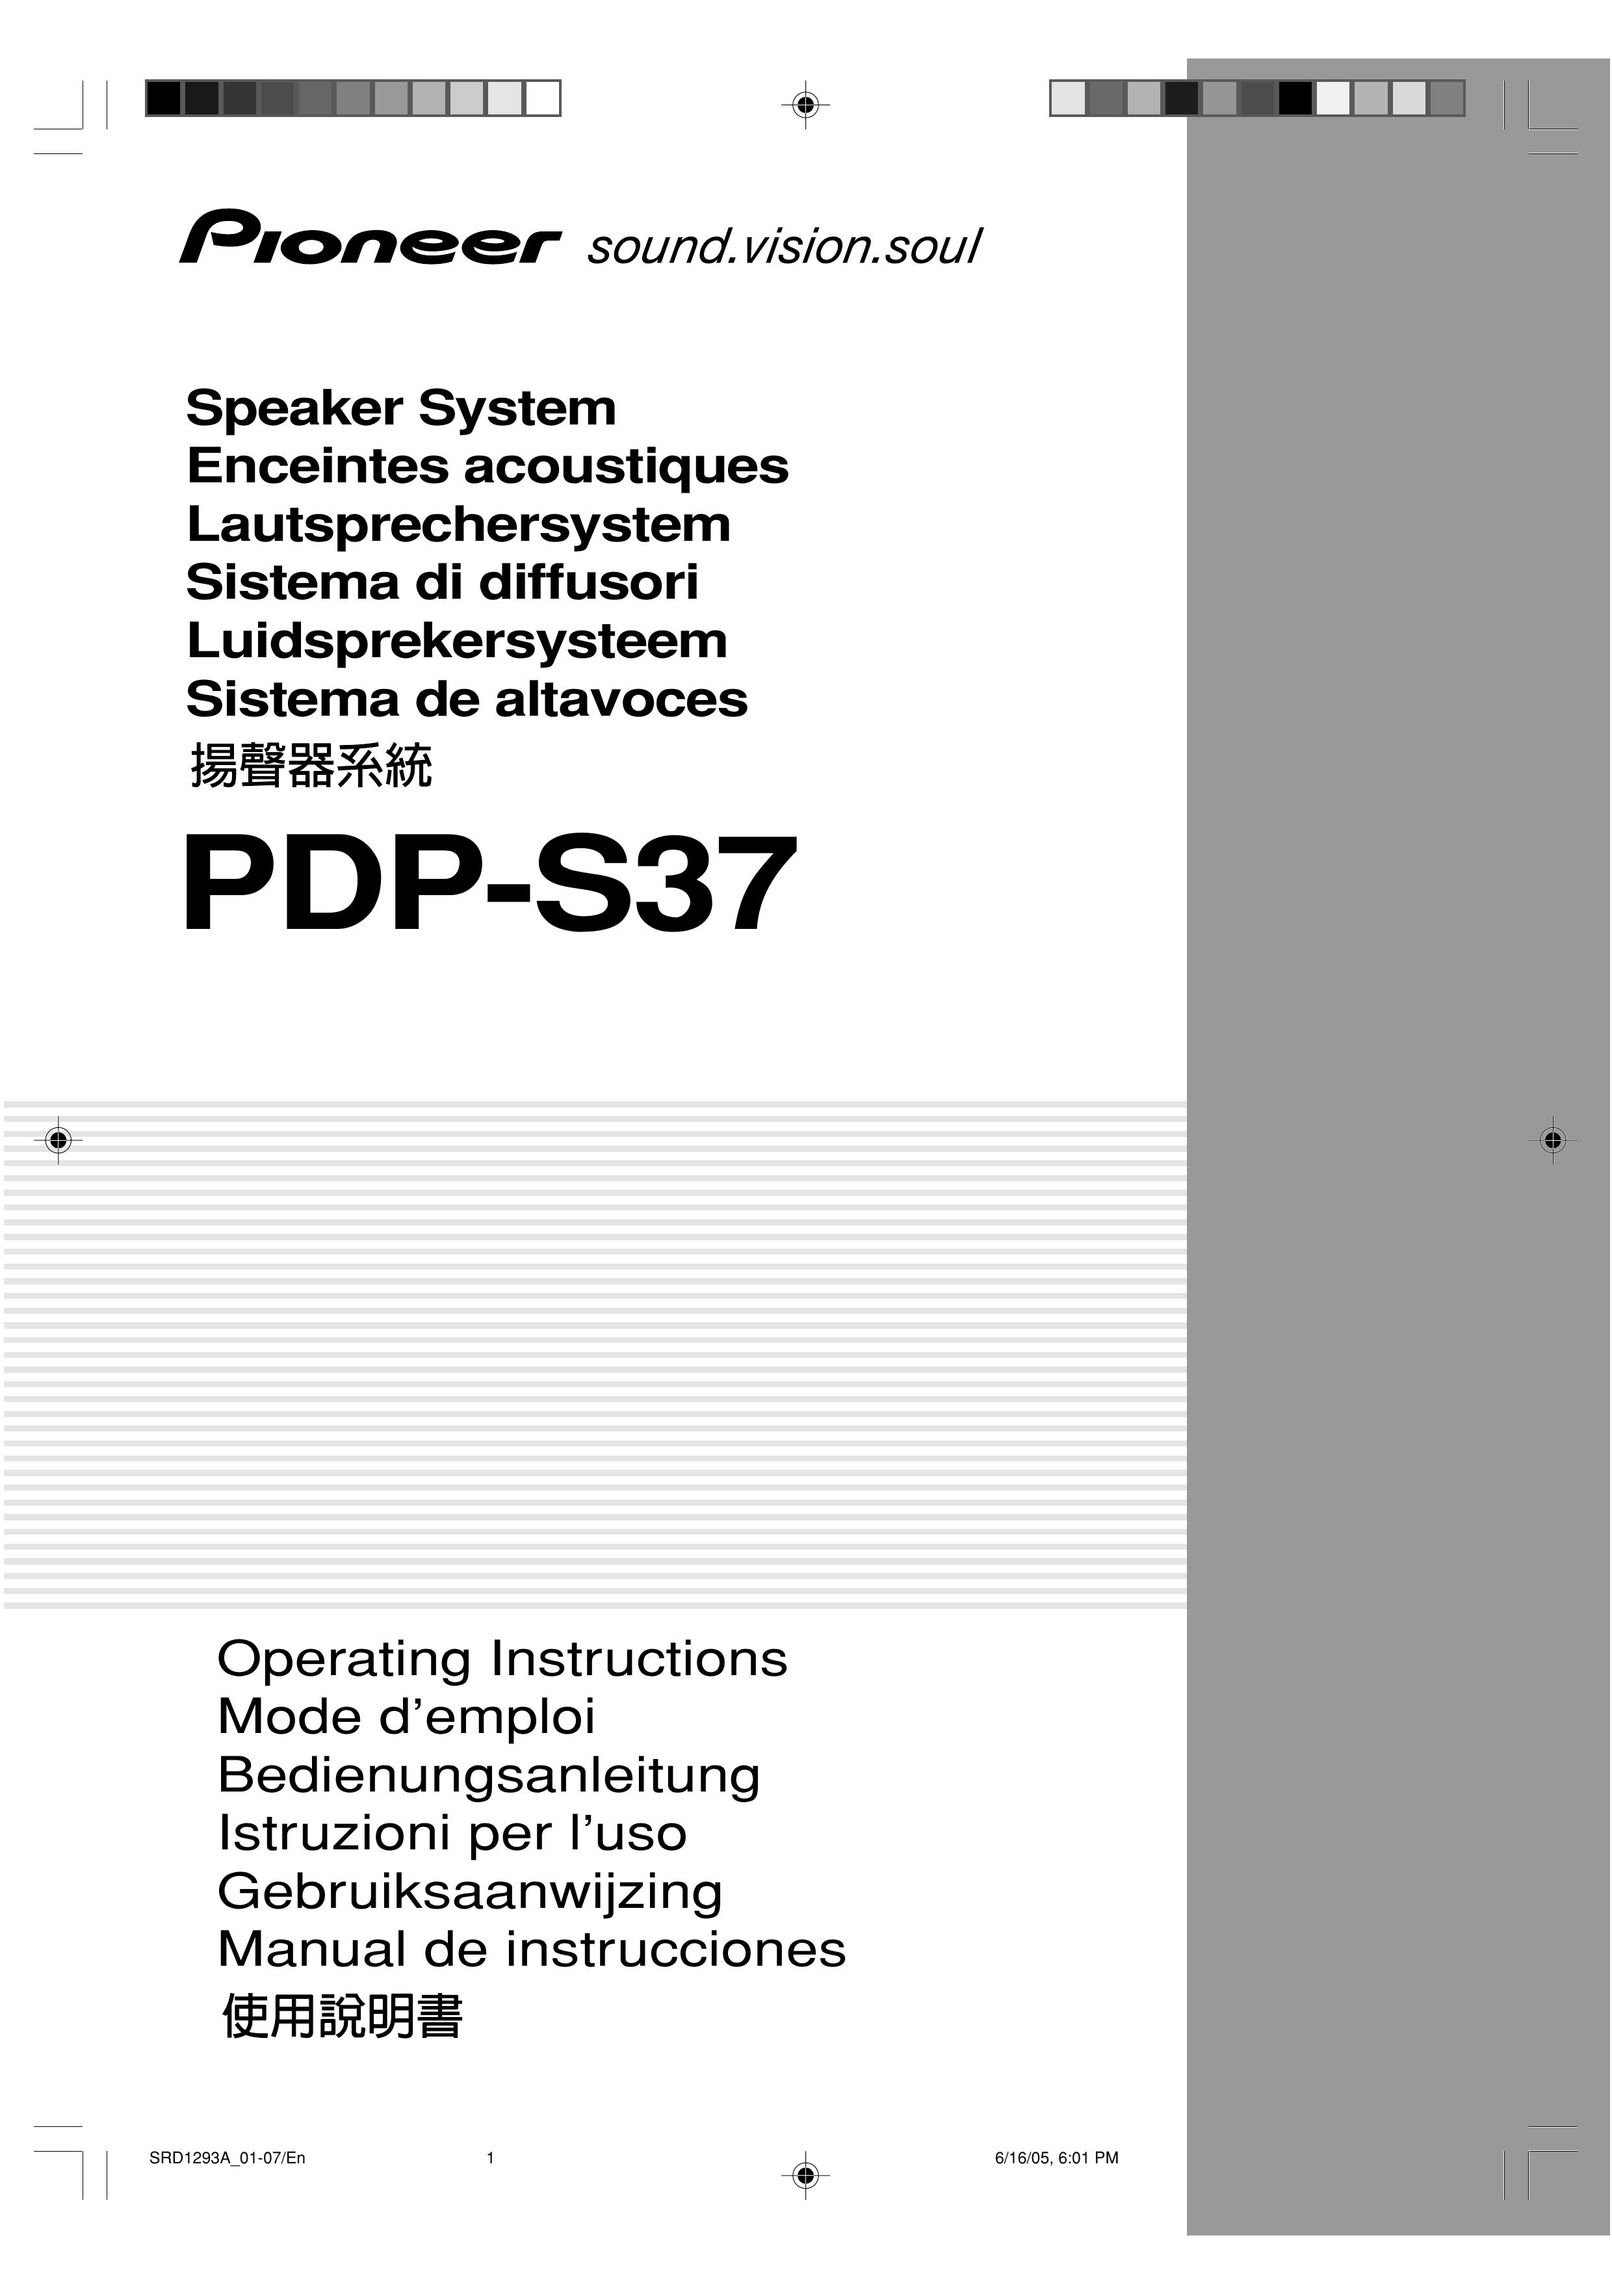 Pioneer PDP-S37 Speaker System User Manual